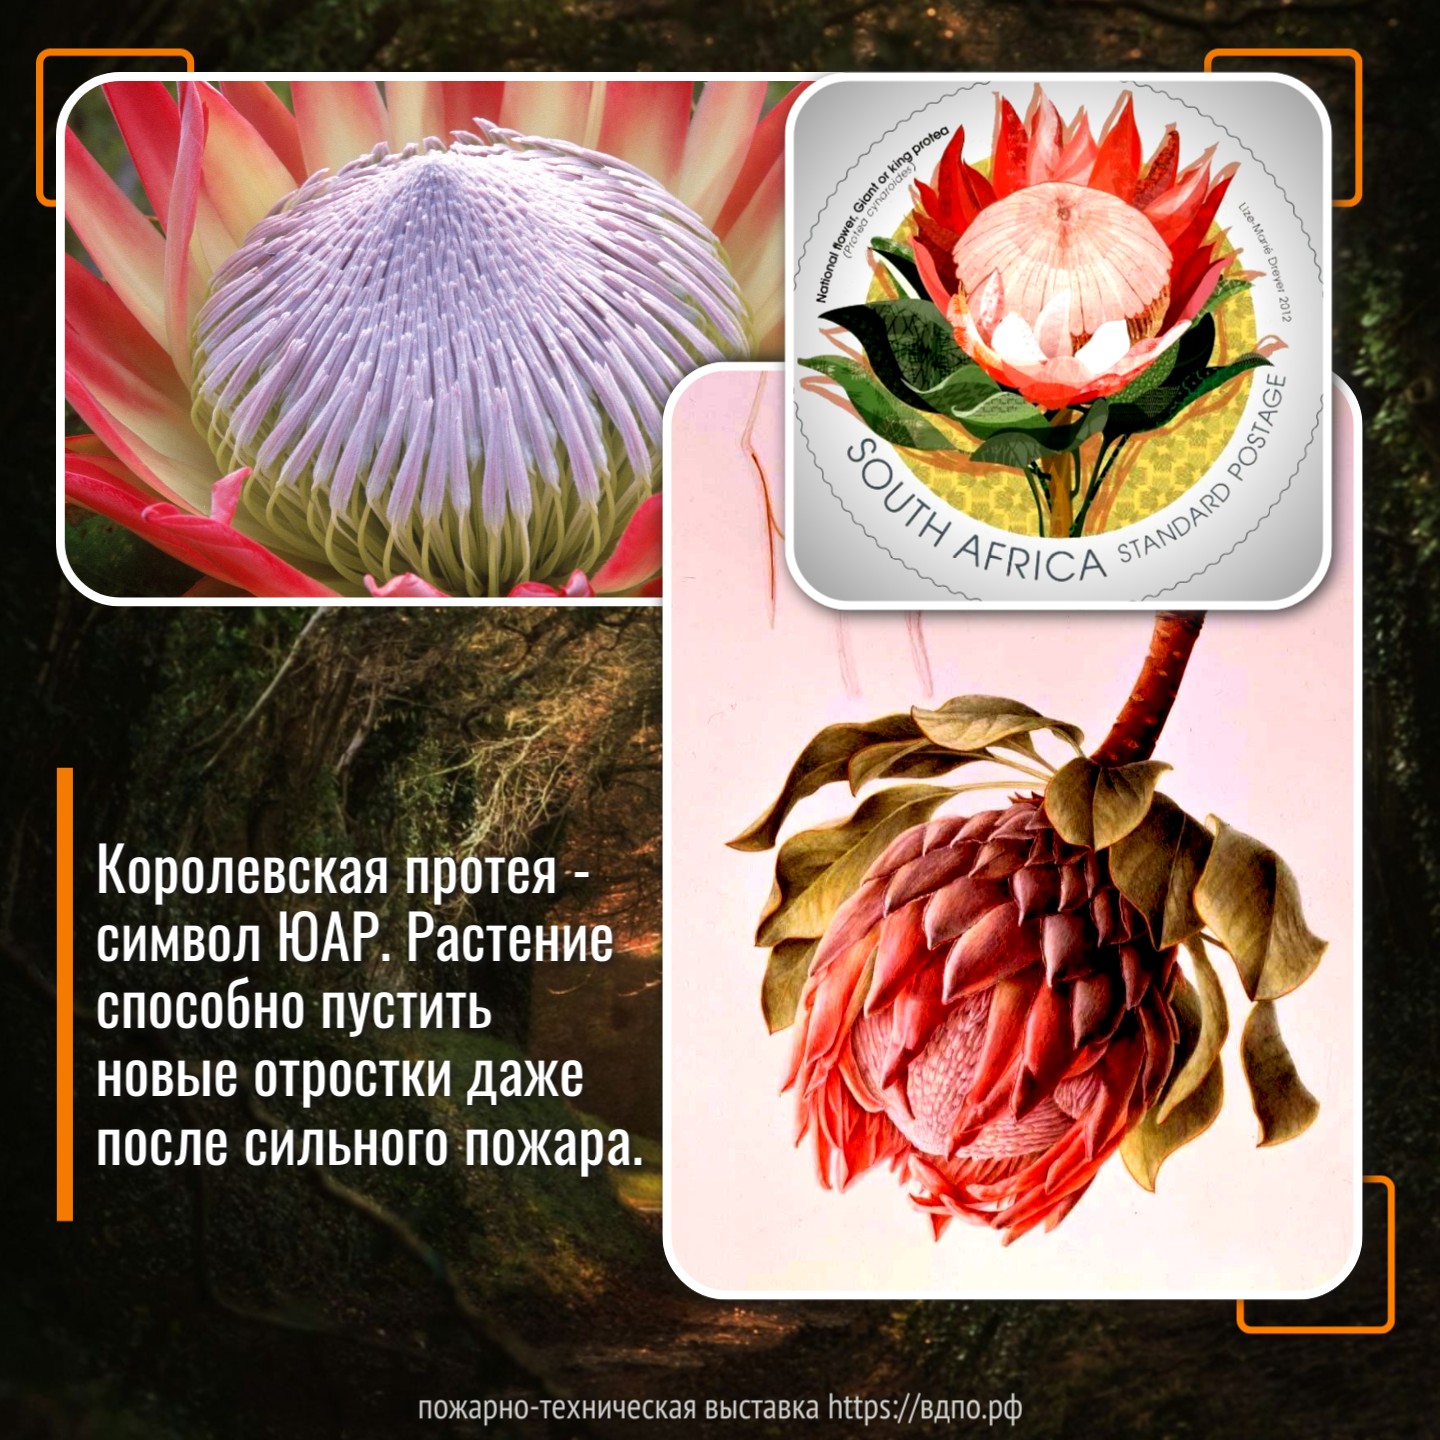 Протея Королевская - цветок, который не боится пожара  Это растение способно пустить новые отростки даже после сильного пожара. Подобные свойства......